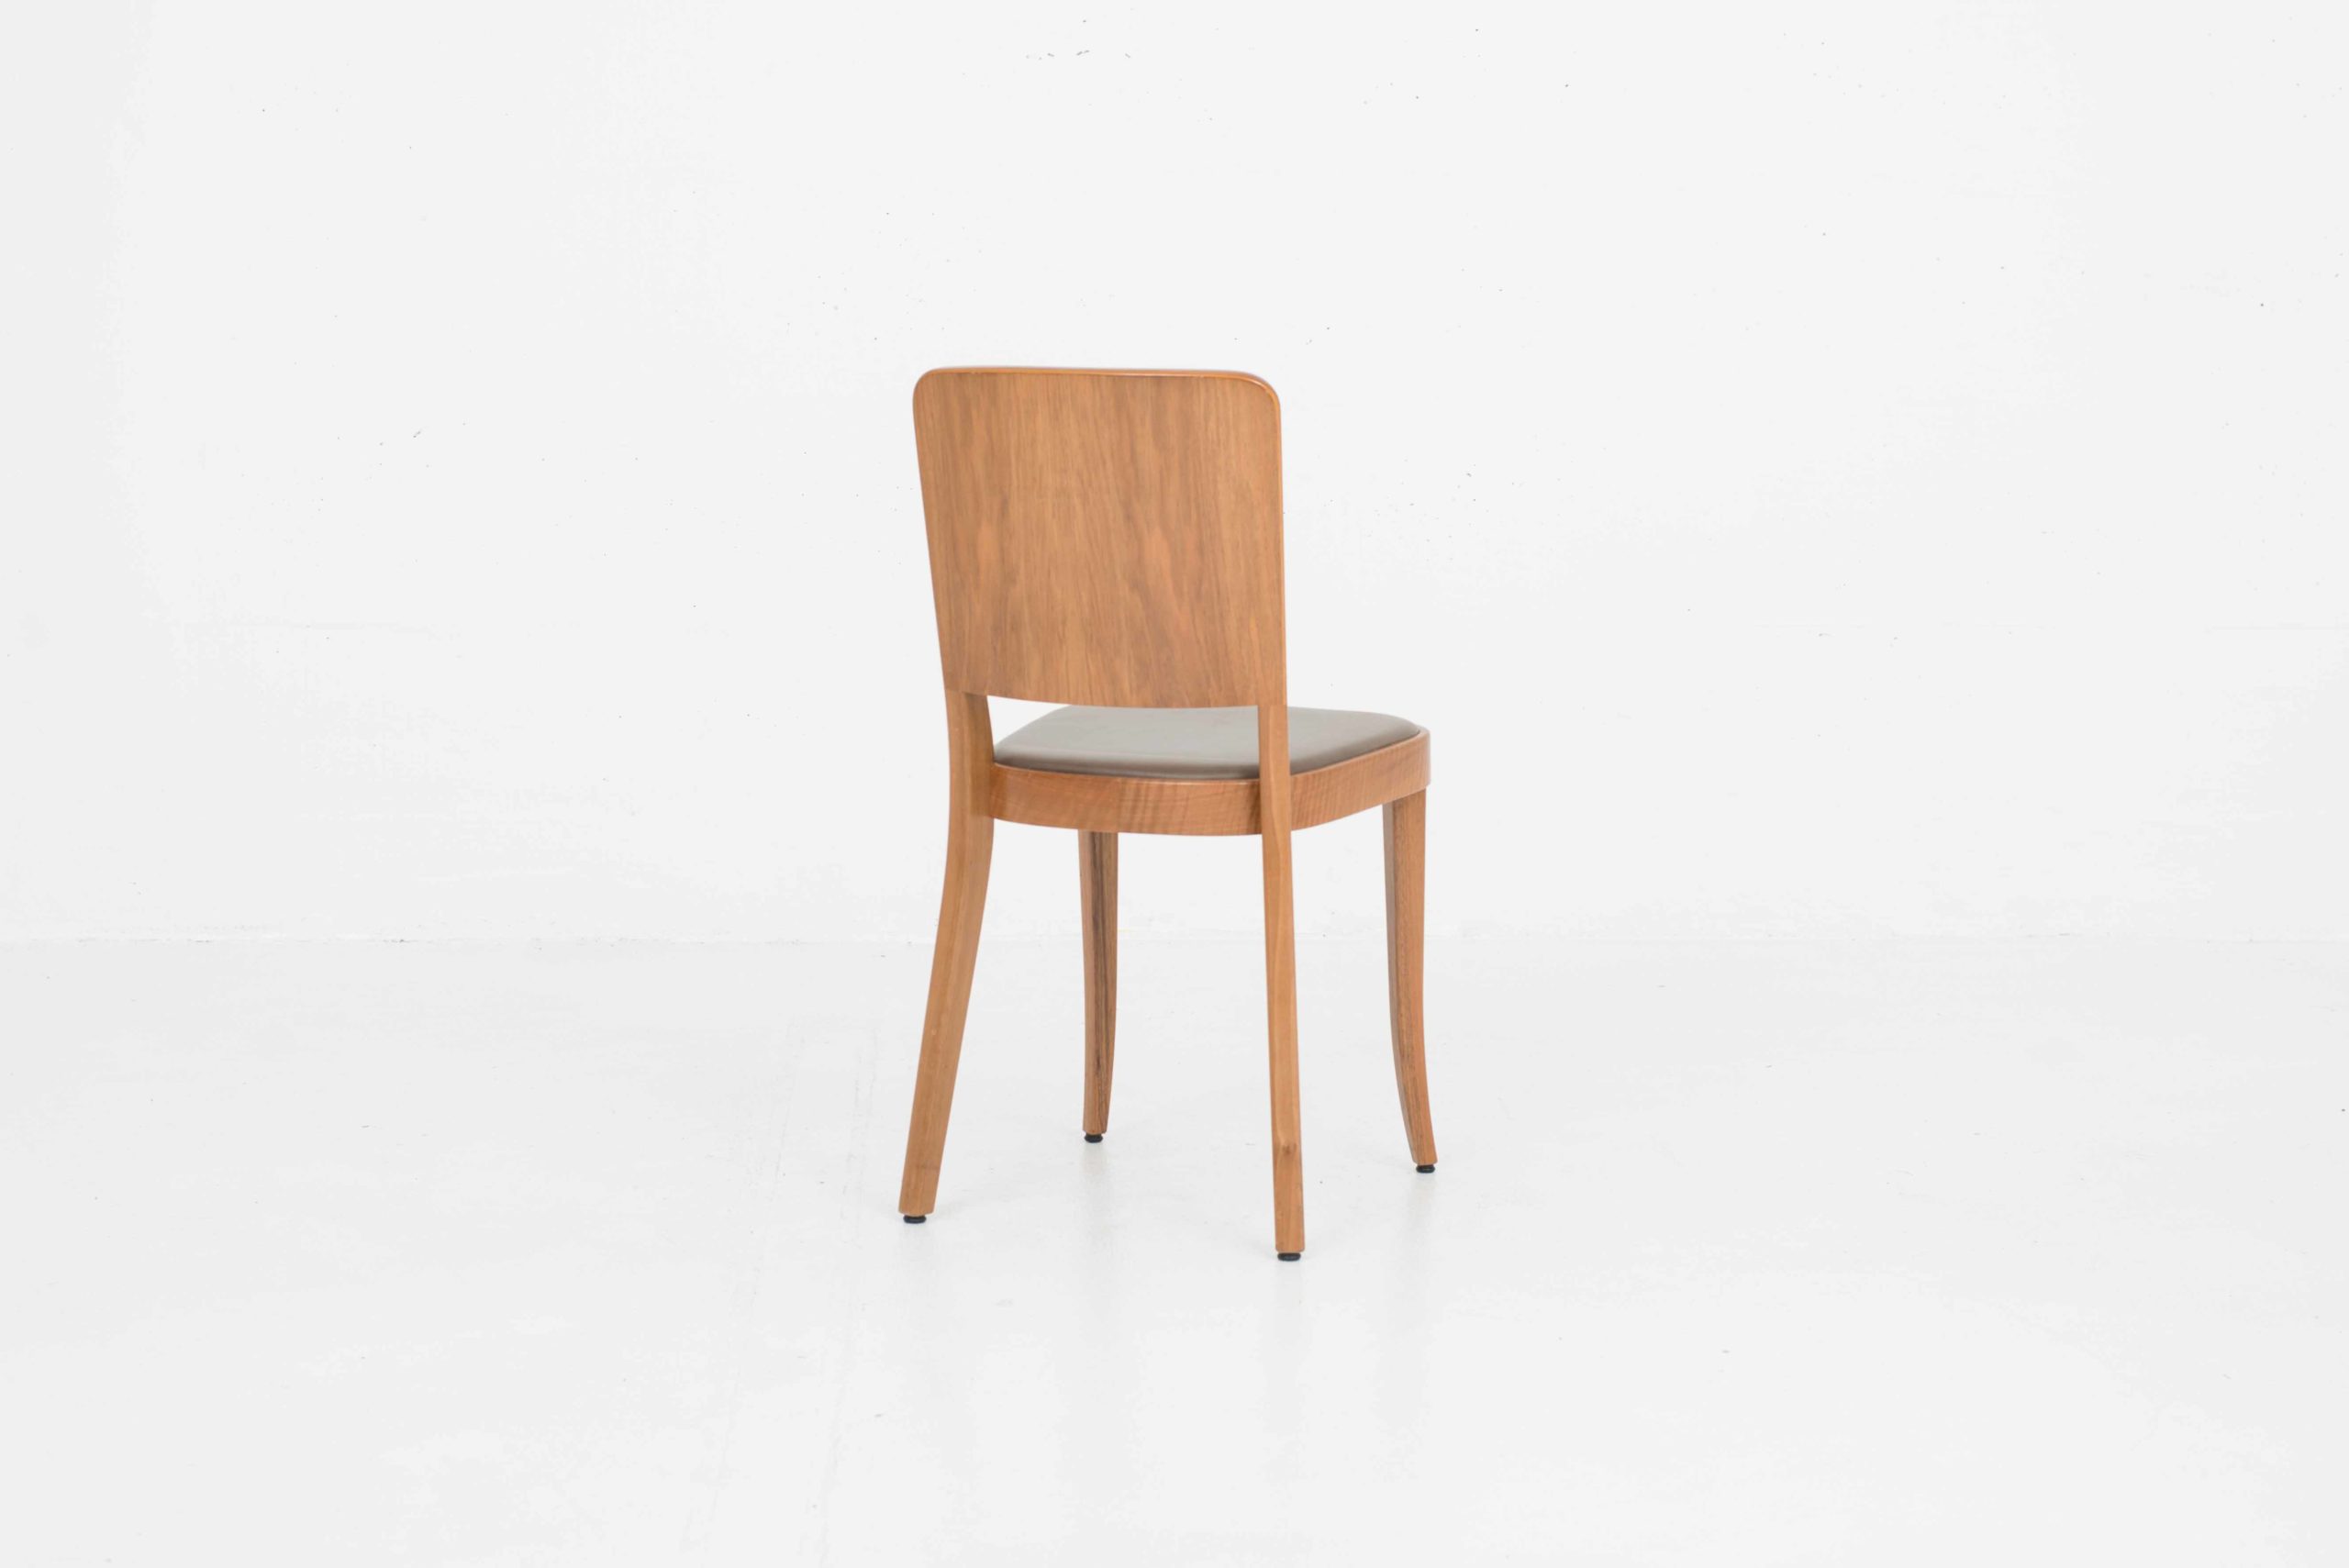 Horgenglarus 1-793 Stühle von Max Ernst Haefeli, im Zweierset-5